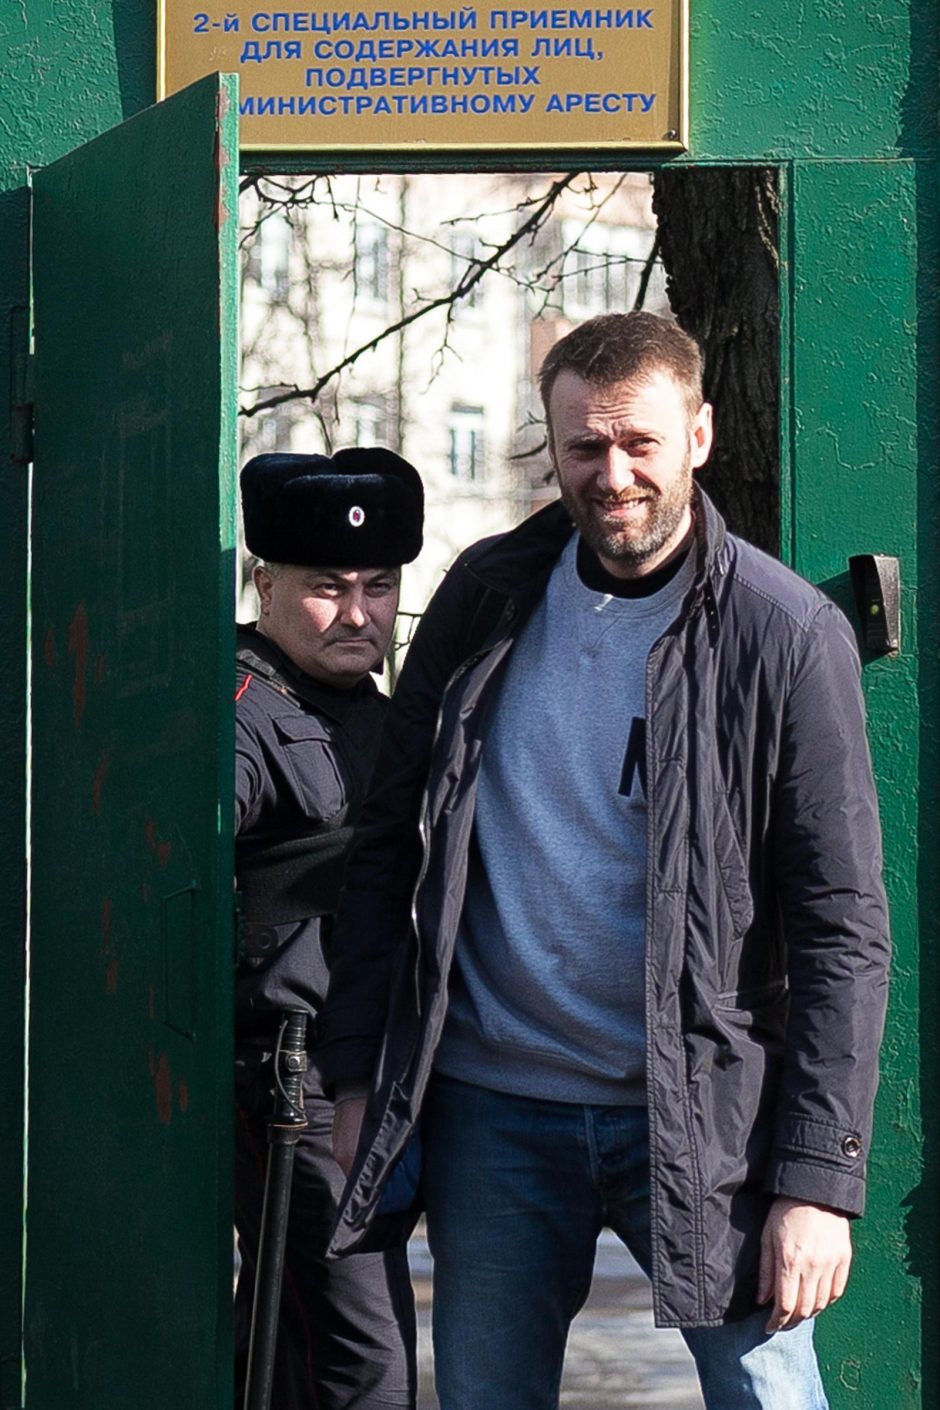 Kremliaus kritikas A. Navalnas paleistas po 15 parų arešto